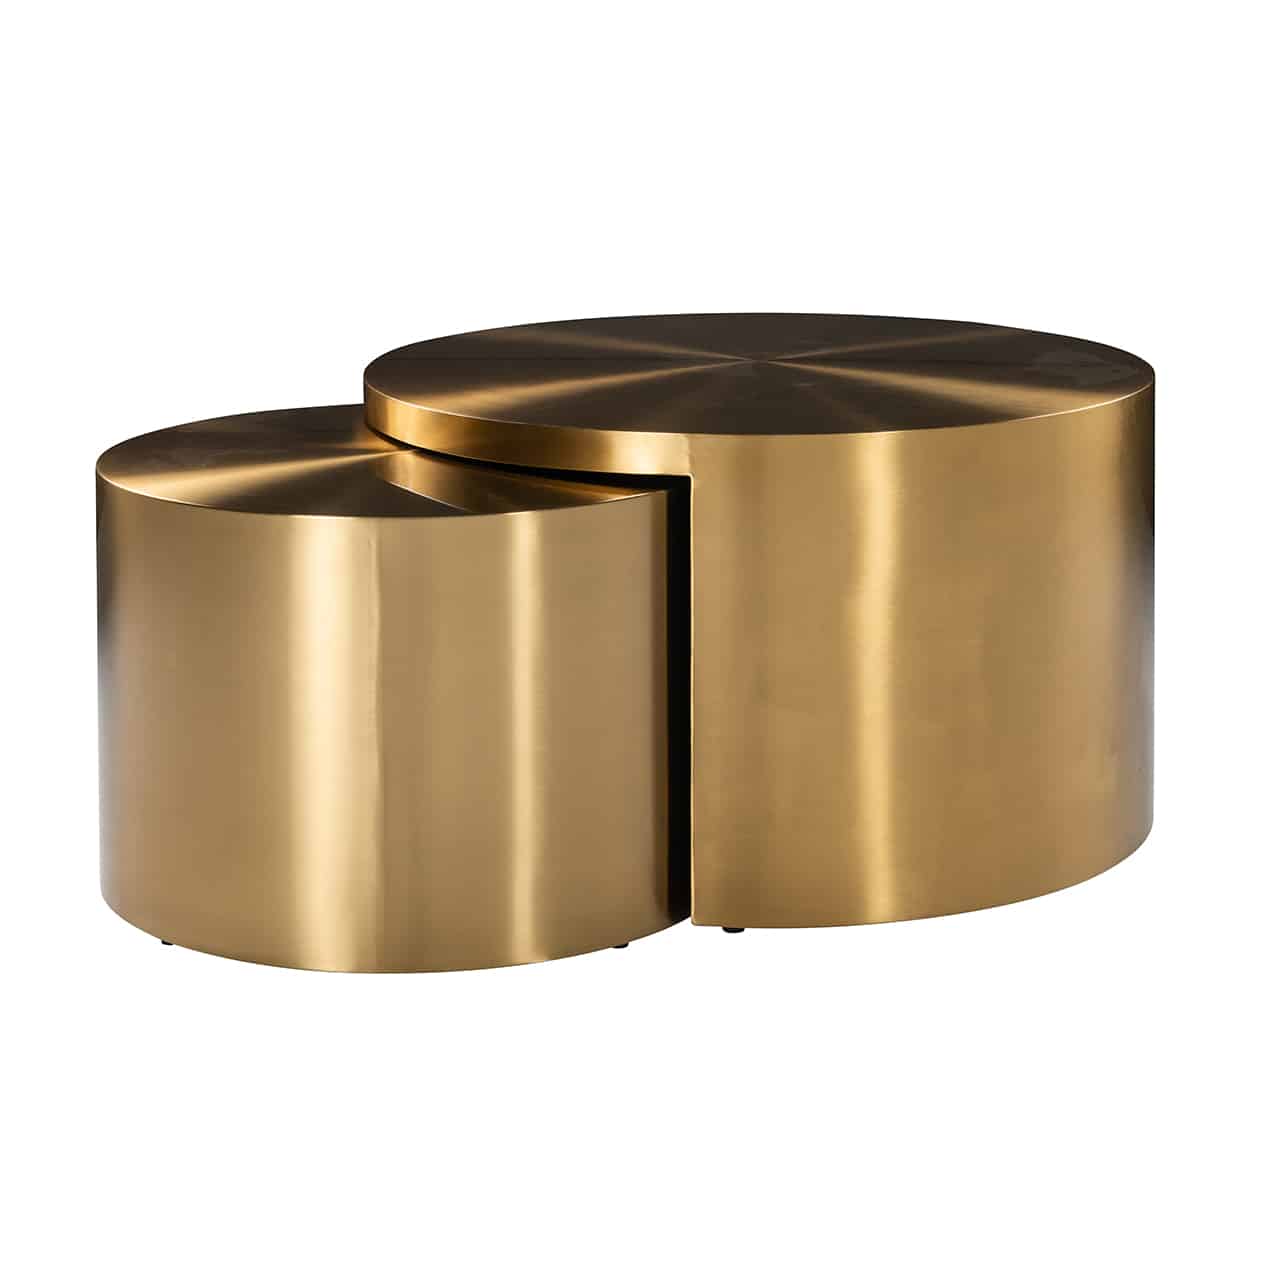 Couchtisch 2er Set im Design von zwei flachen, goldenen Zylindern verschiedener Höhe;  der größere hat  unter den Tischplatte eine Aussparung, sodass beide Tische zu ca. einem Drittel ineinandergeschoben sind